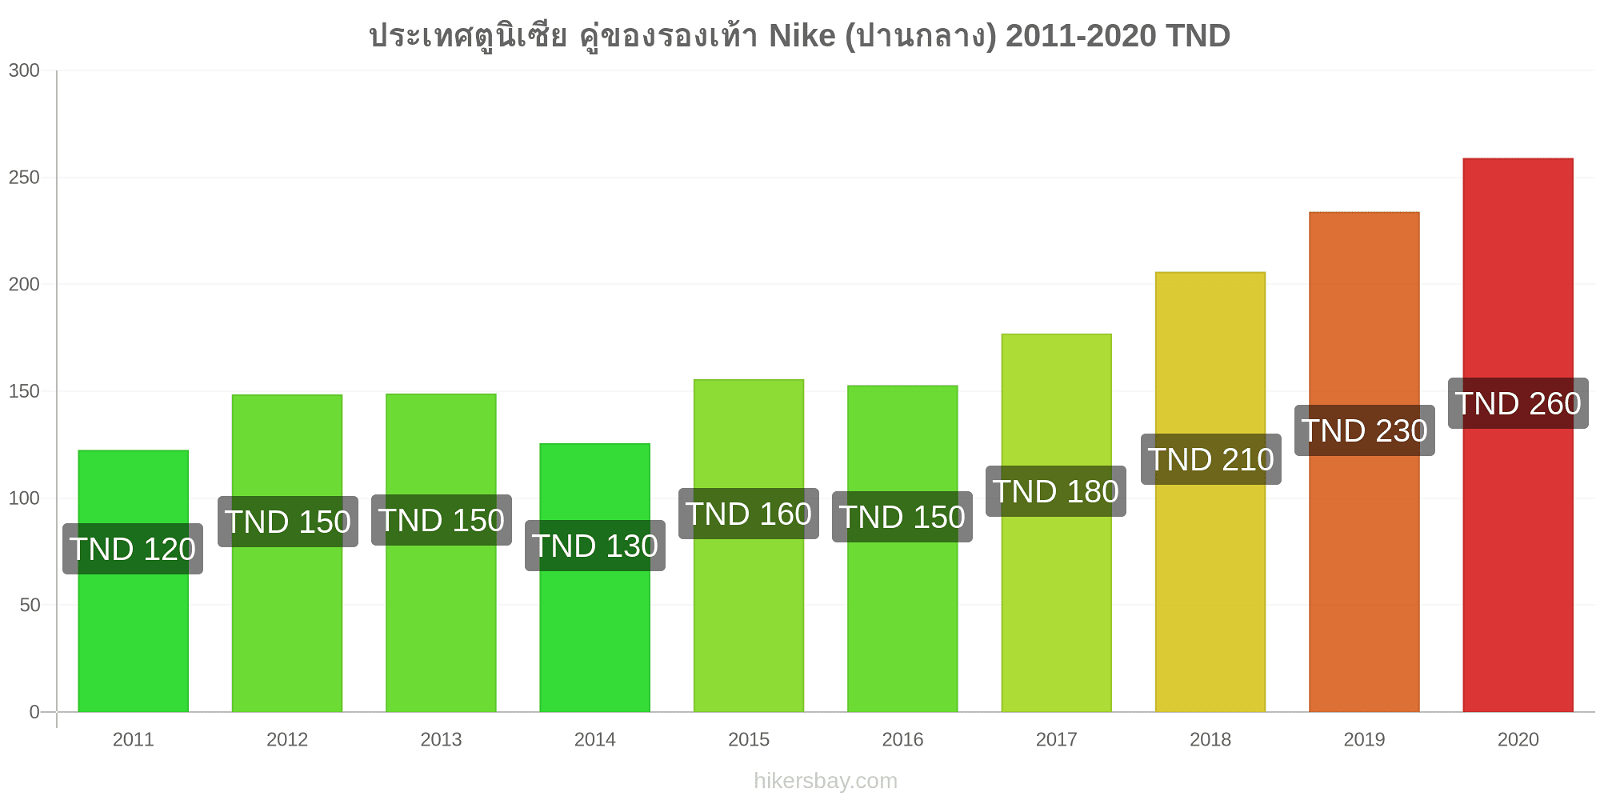 ประเทศตูนิเซีย การเปลี่ยนแปลงราคา คู่ของรองเท้า Nike (ปานกลาง) hikersbay.com